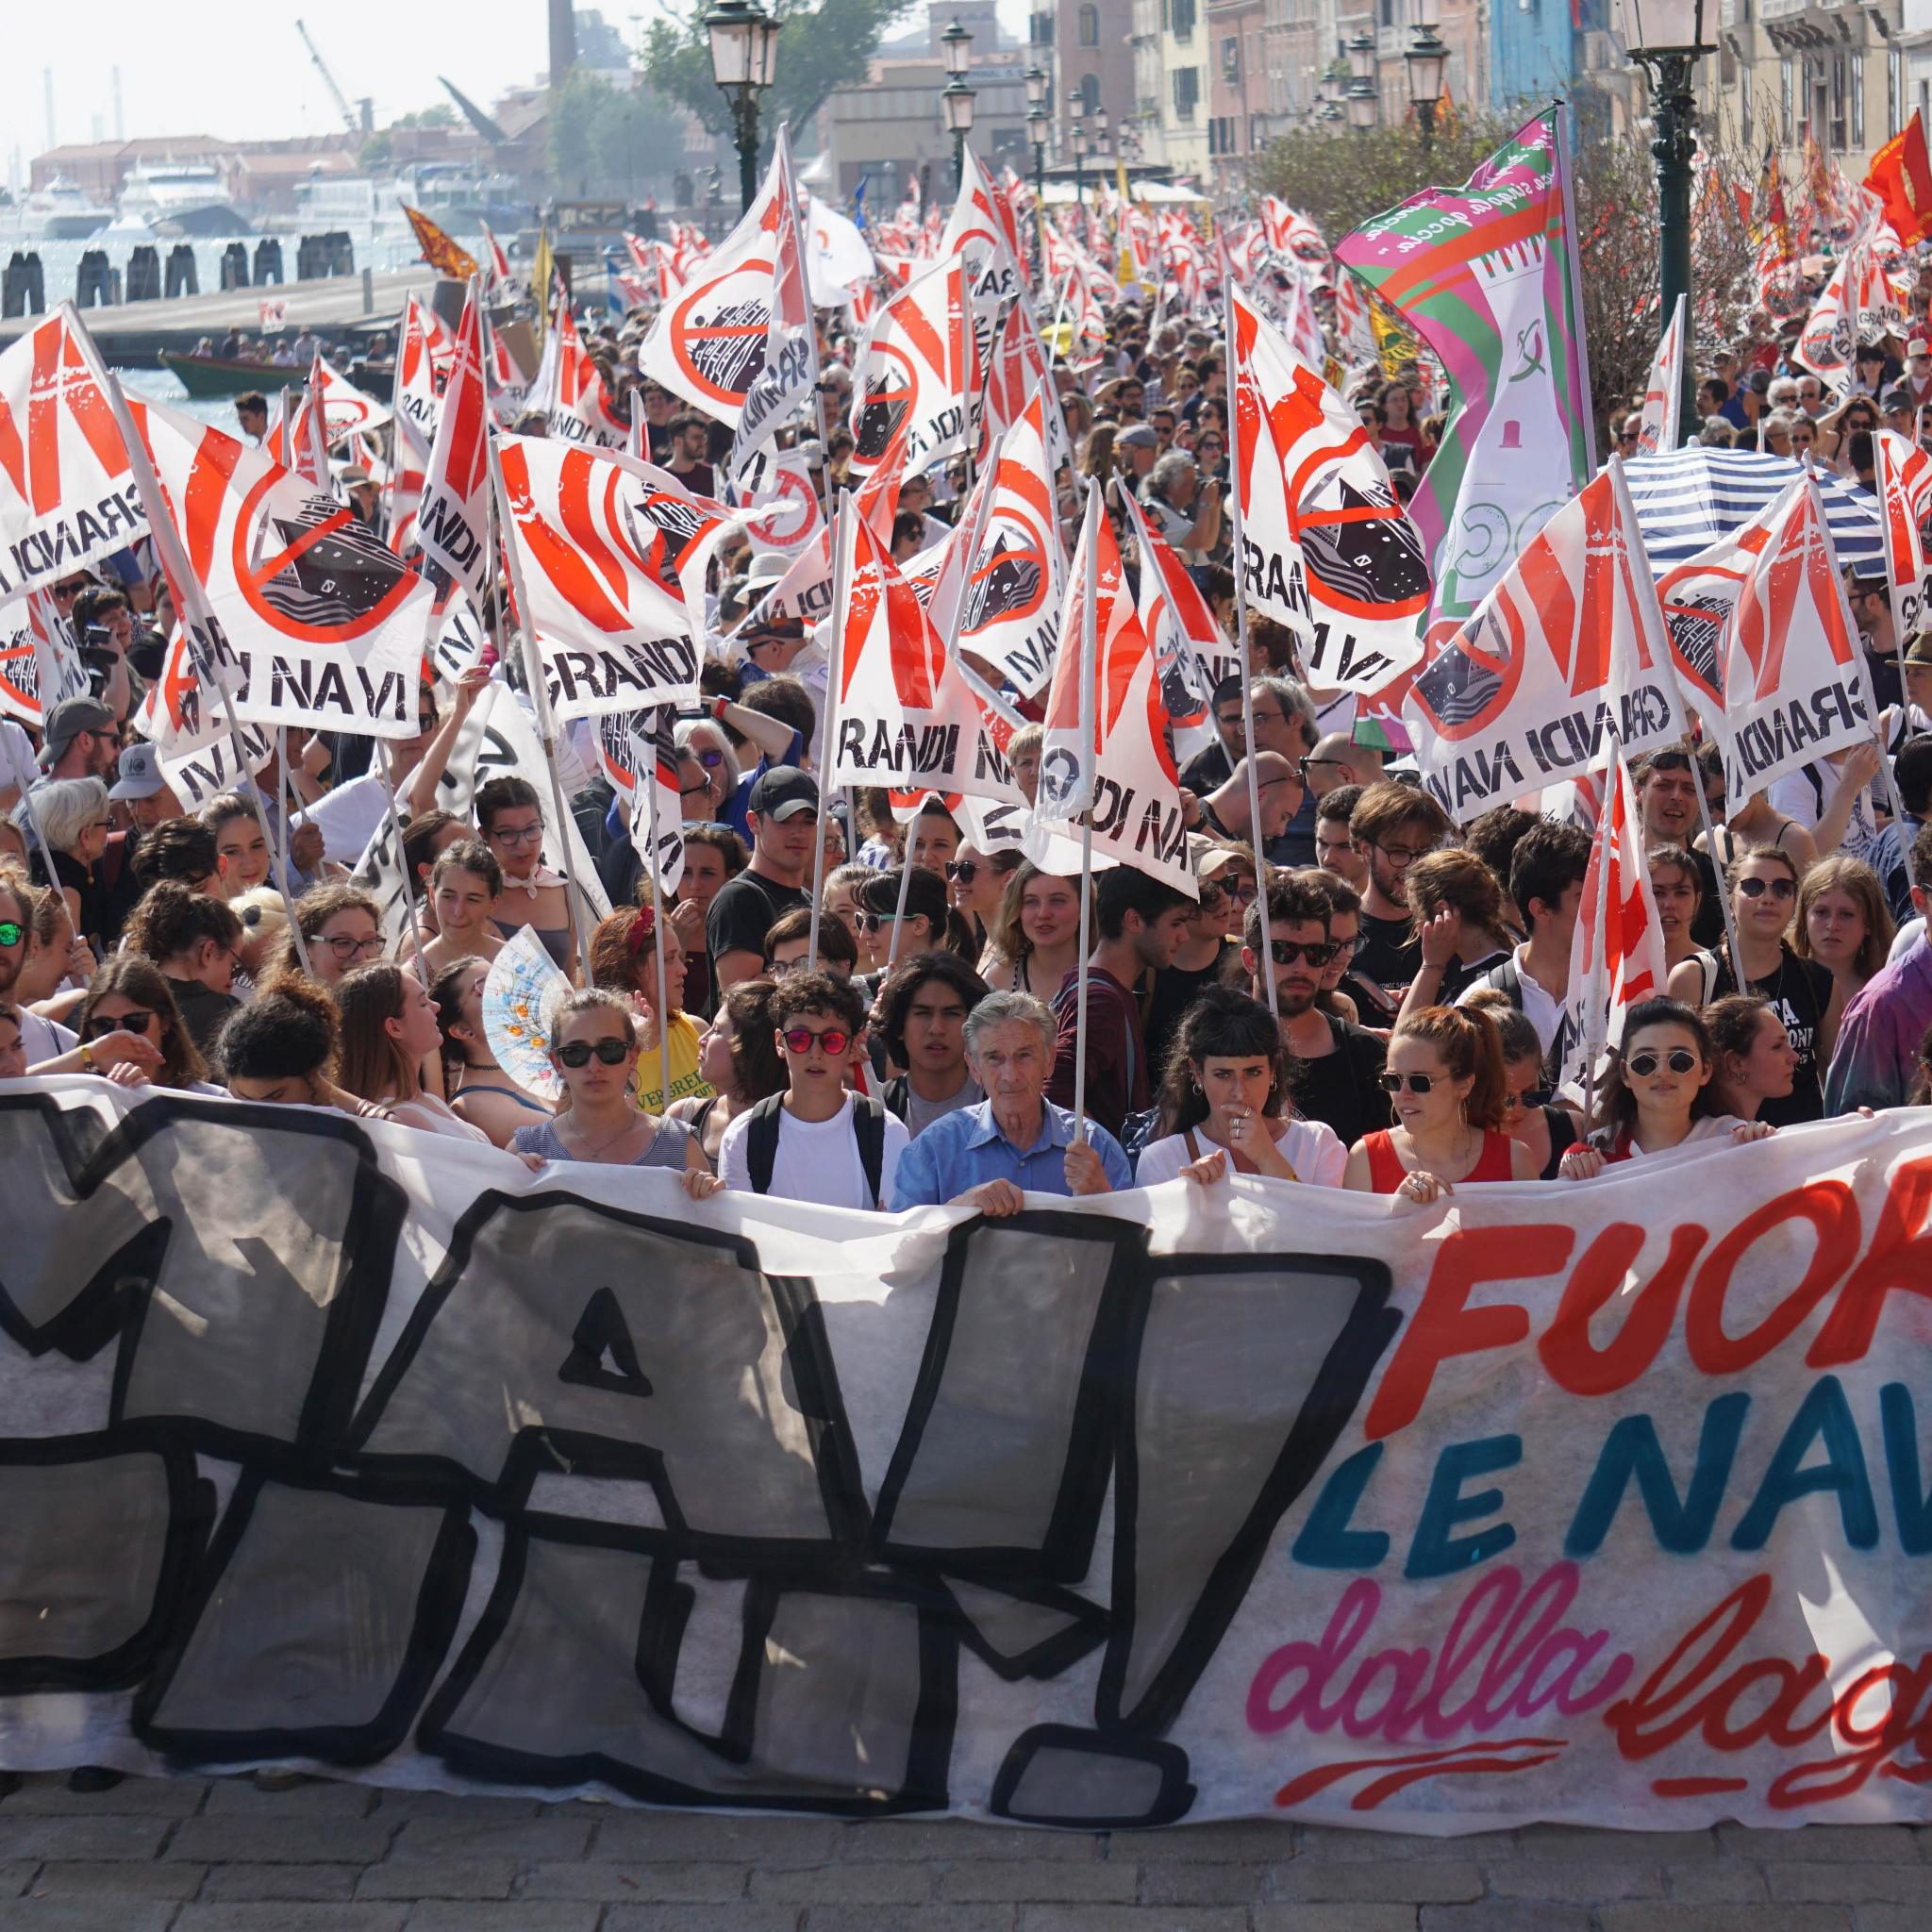 Een groot protest ‘No Grandi Navi’ tegen cruiseschepen in Venetië. (Foto Andrea Merola / EPA)